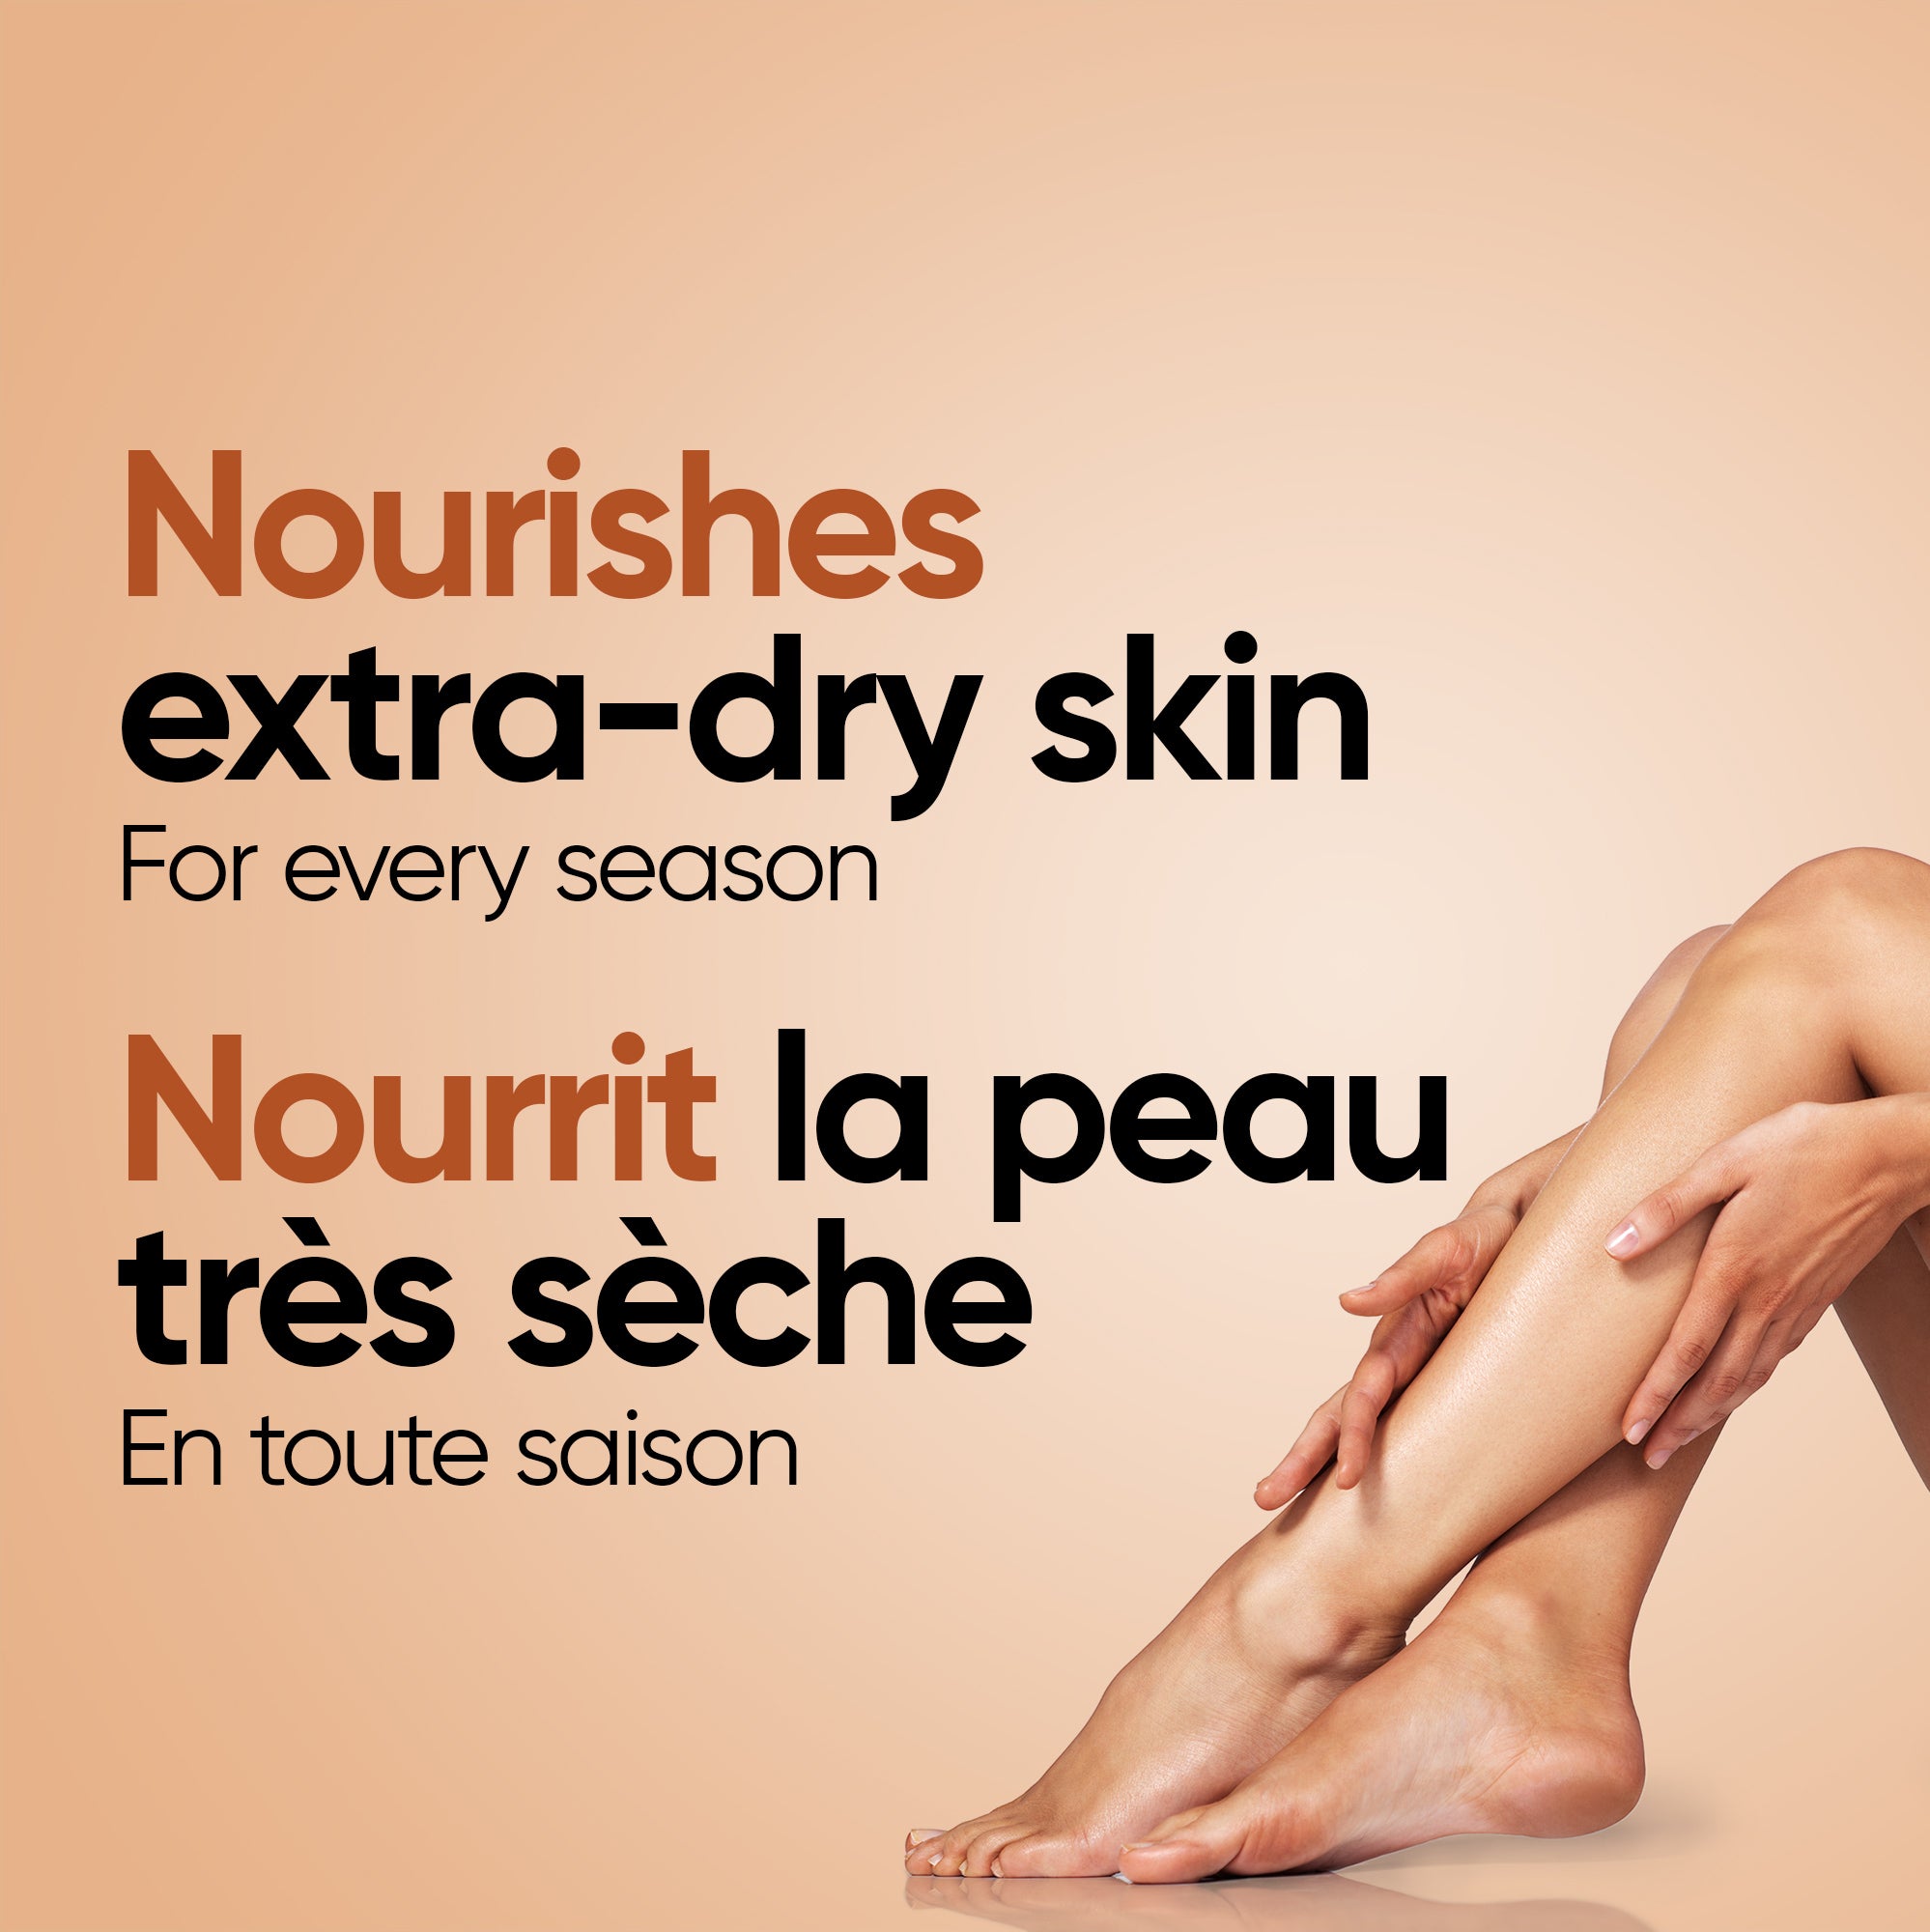 English: Nourishes extra-dry skin for every season Français: Nourrit la peau très sèche peu importe la saison